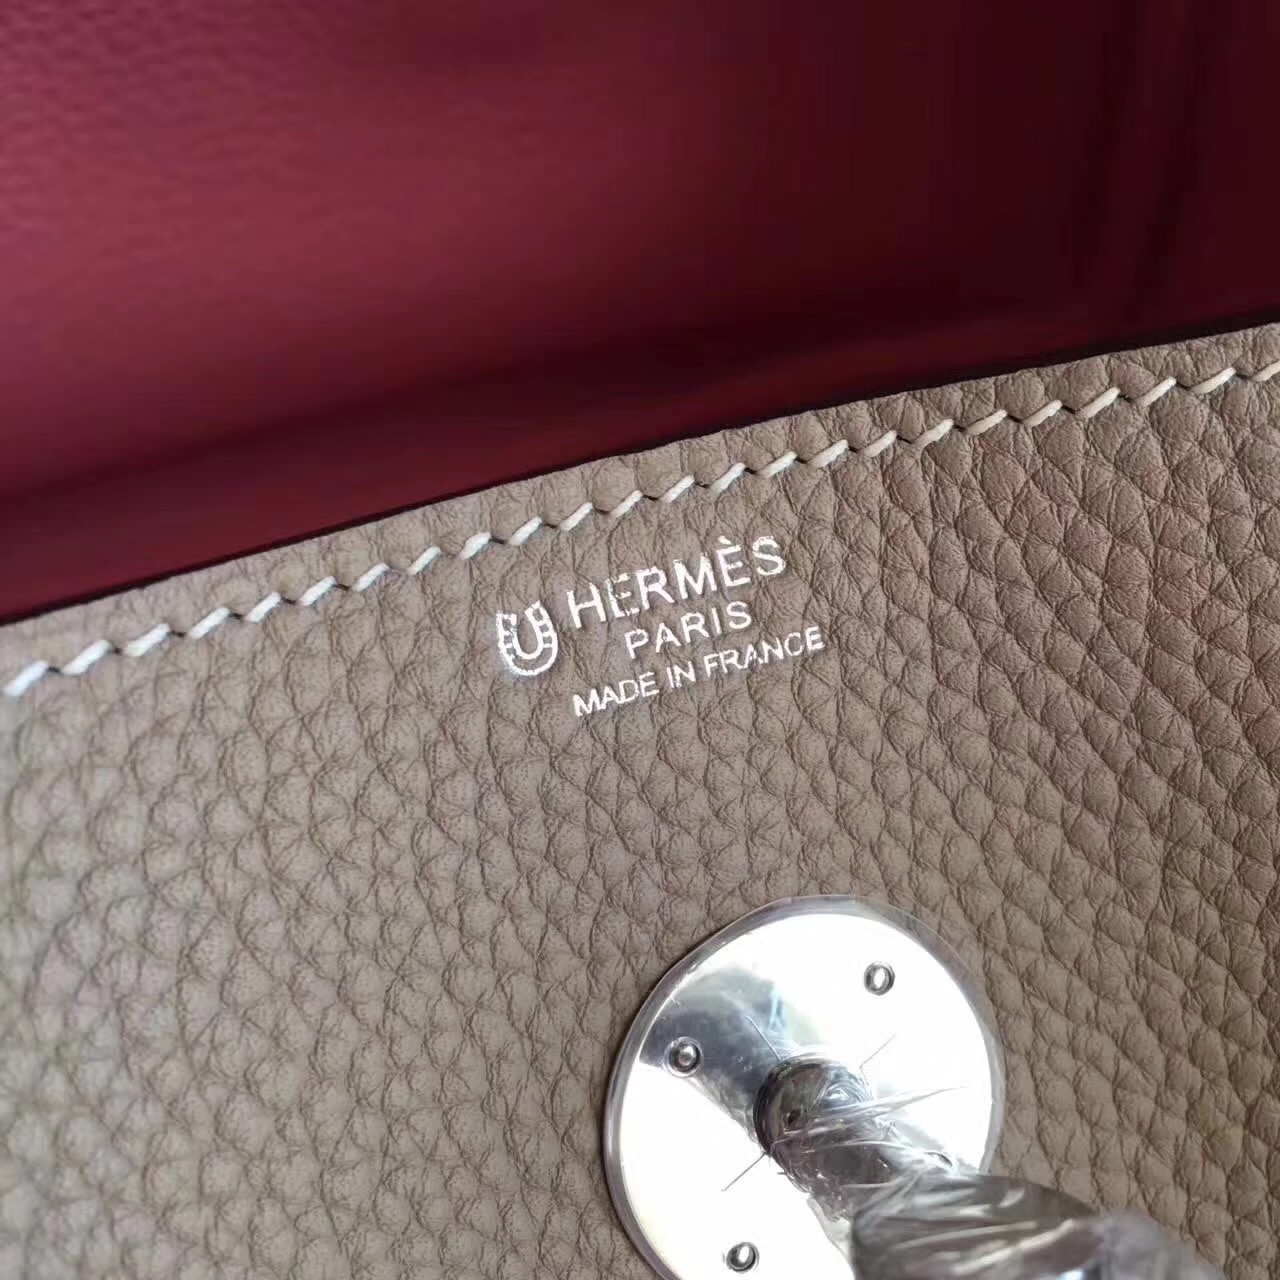 Hermes original top togo leather large lindy 34 bag H34 apricot&pink